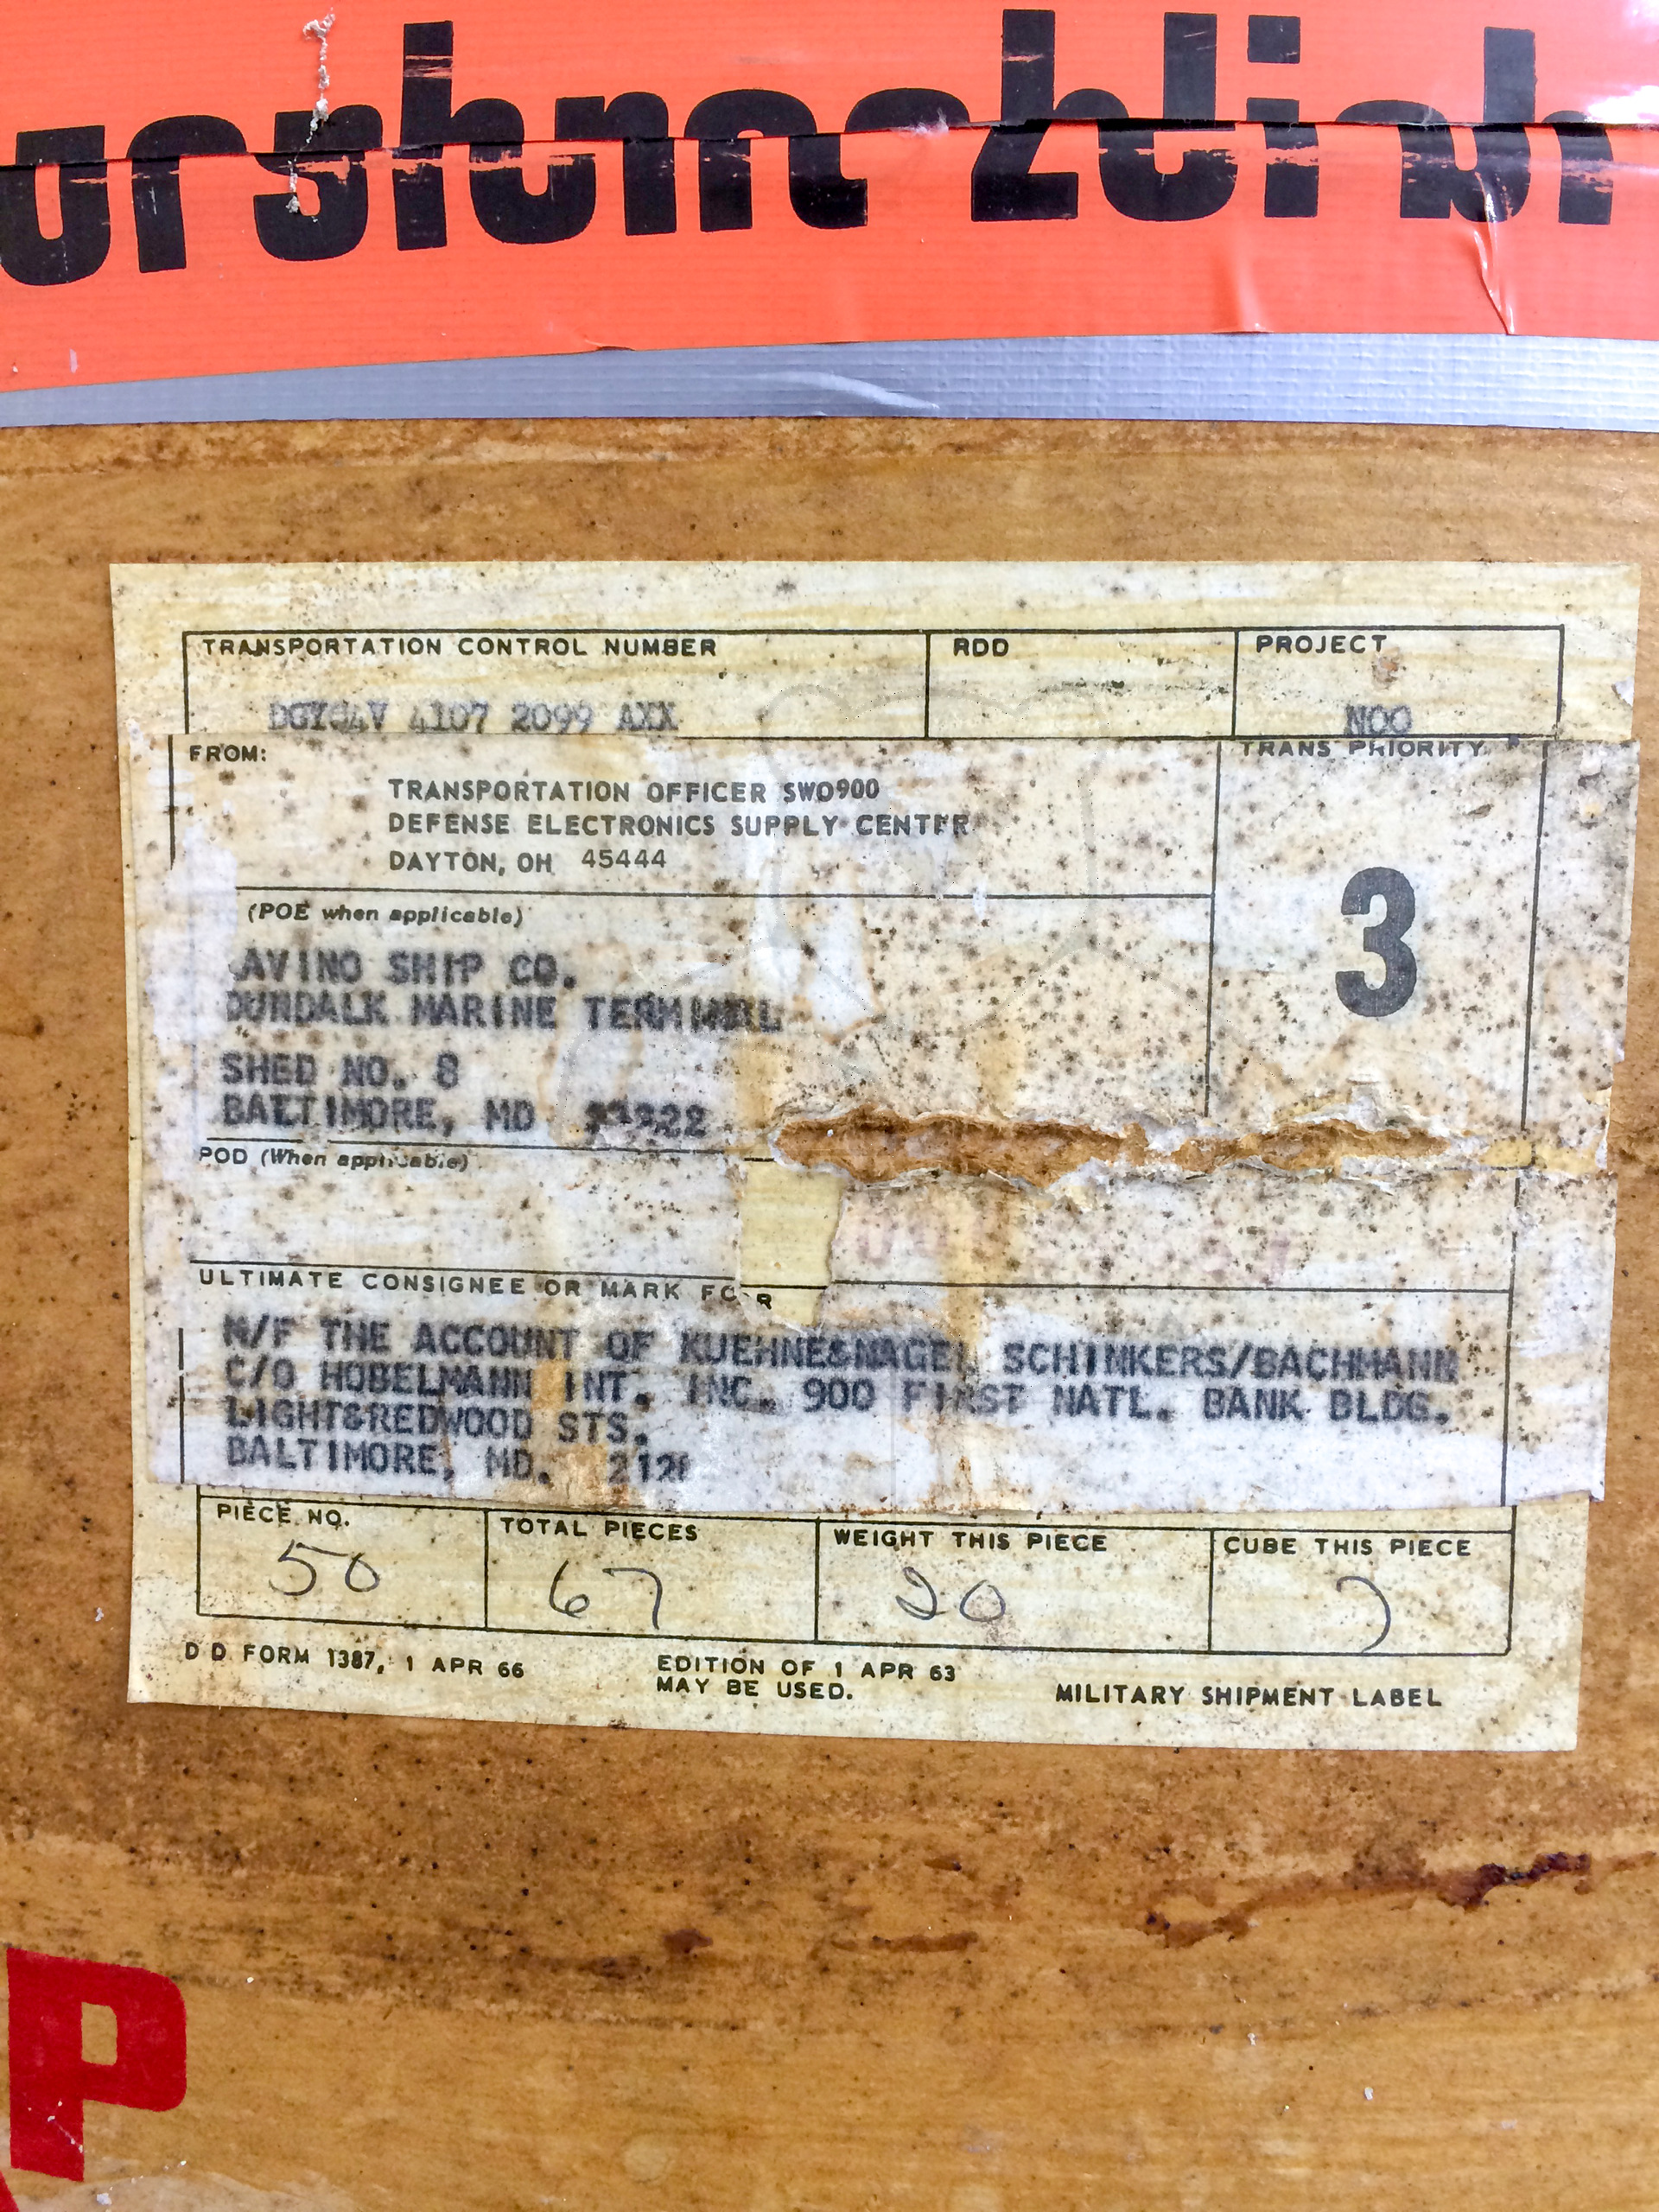 Röhre 5973 Transportverpackung, Original Versandanschrift